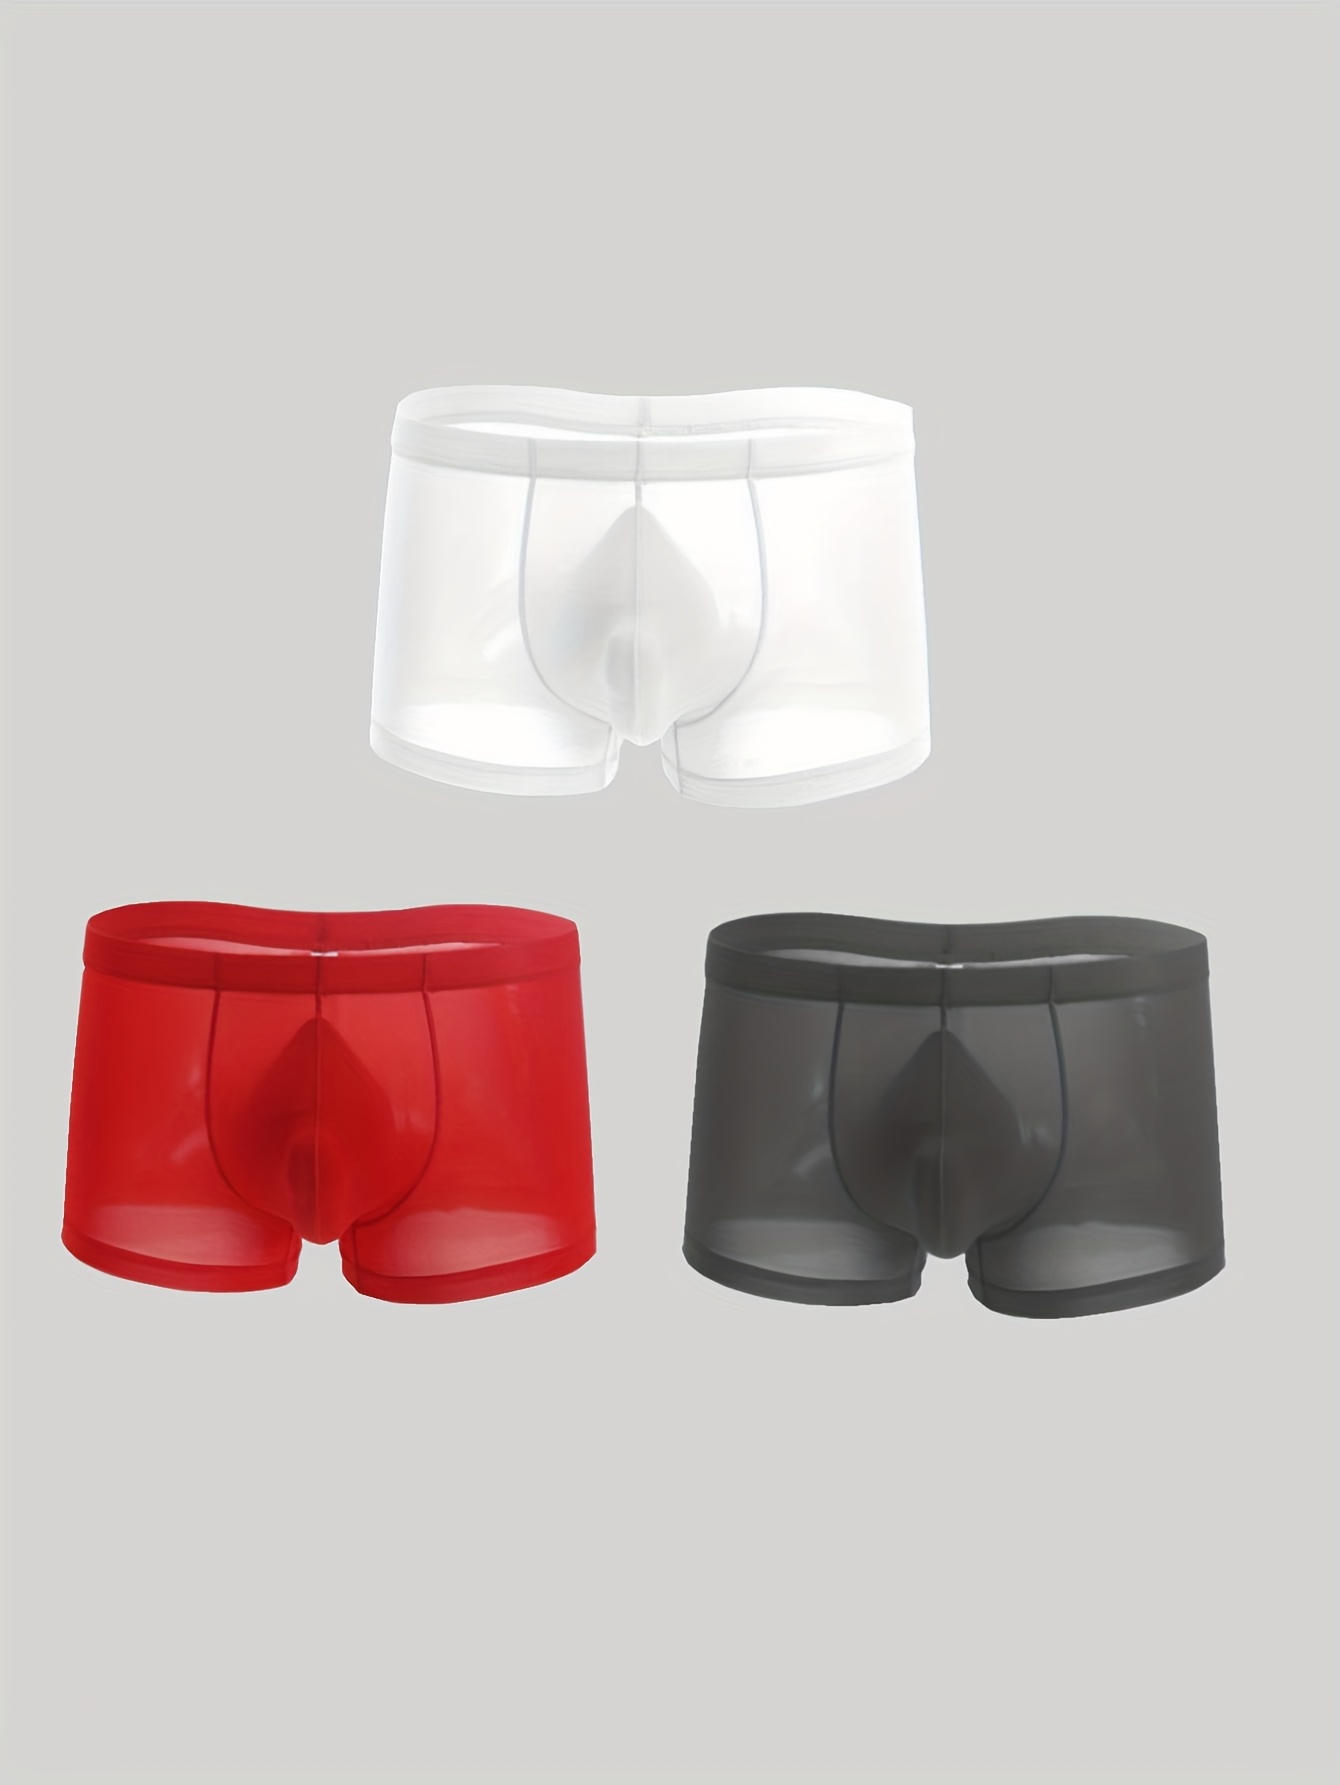 Mens Underwear Briefs Men'S Summer Thin Transparent Ice Silk Boxers  Breathable Men Waist Non-Trace Pants Underwear 